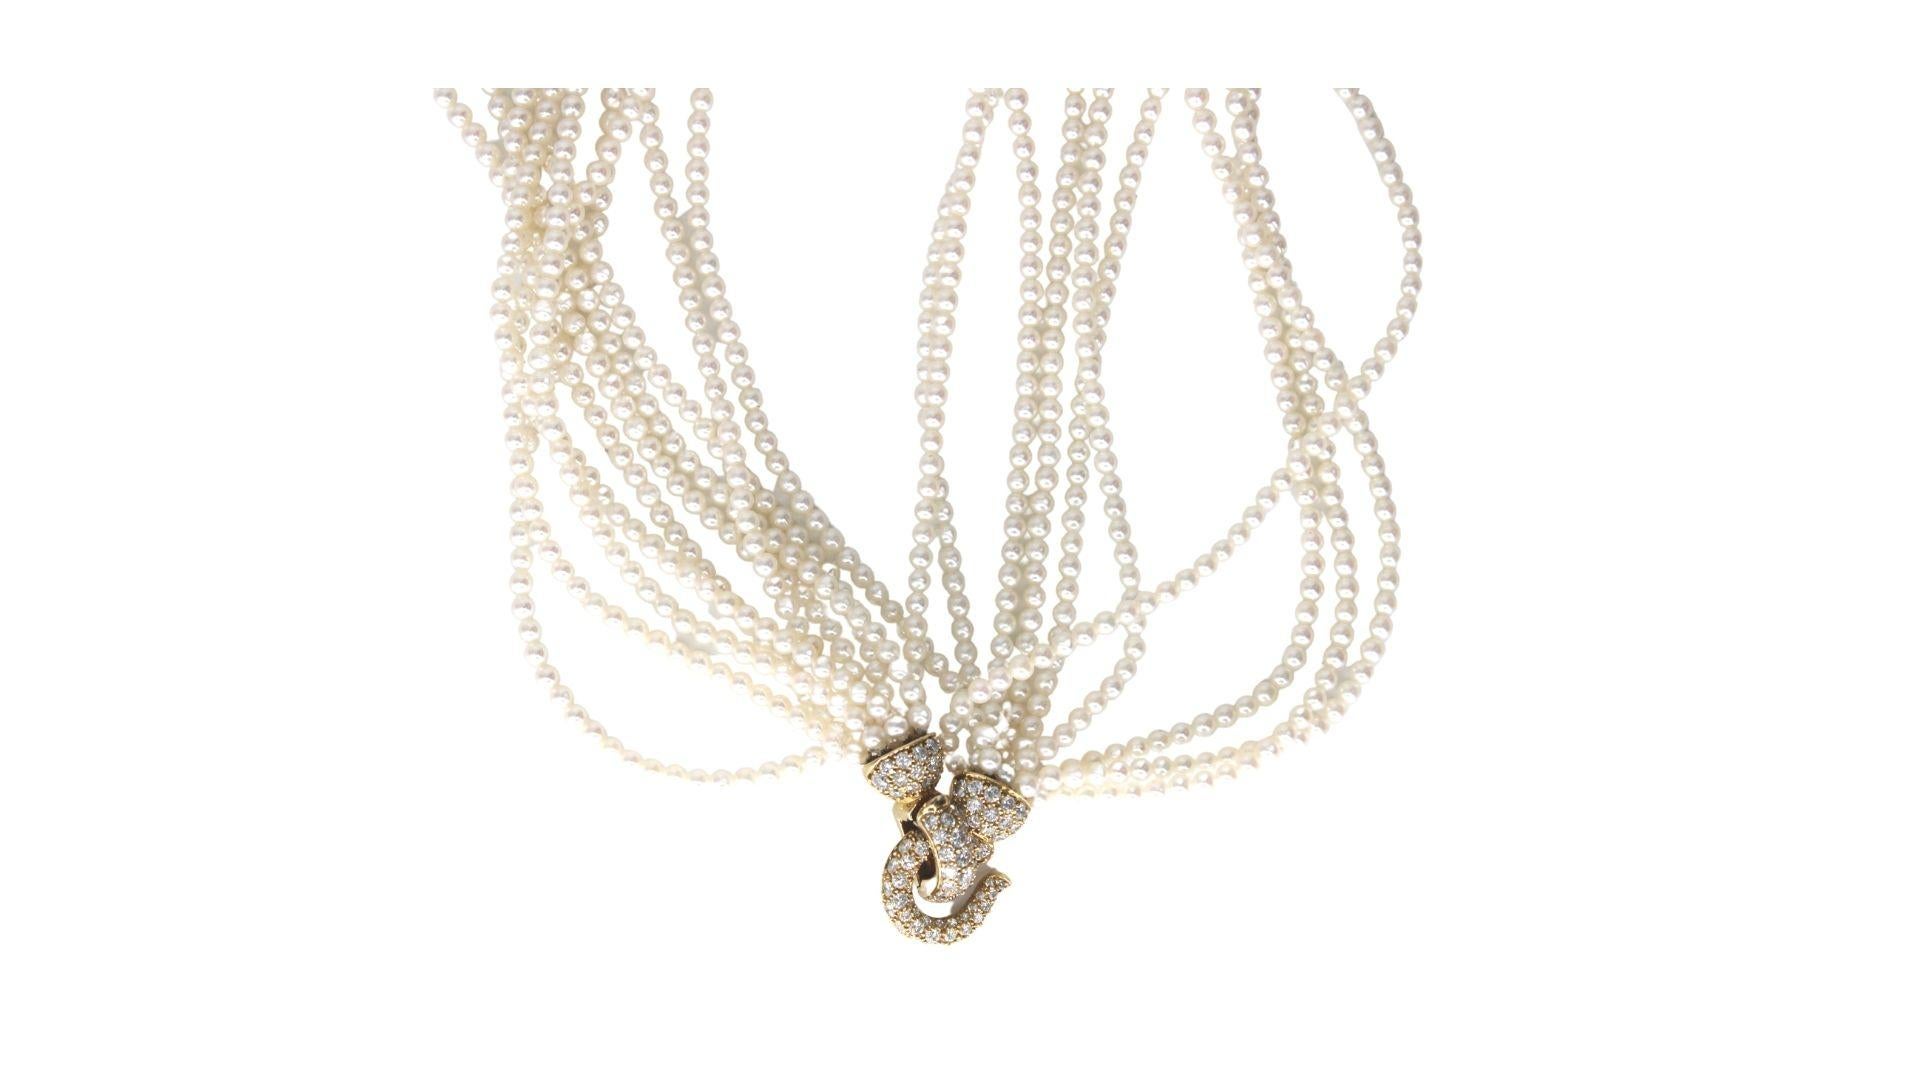 Collier de perles de mer exclusif composé de perles parfaitement rondes.
Ce collier est composé de 1.90k diamants Fvvs1 et d'un fermoir en or jaune 18k et diamants. Il est vendu par Cartier.
*Signé par Cartier* 

Longueur : 42 cm = 16.53 pouces